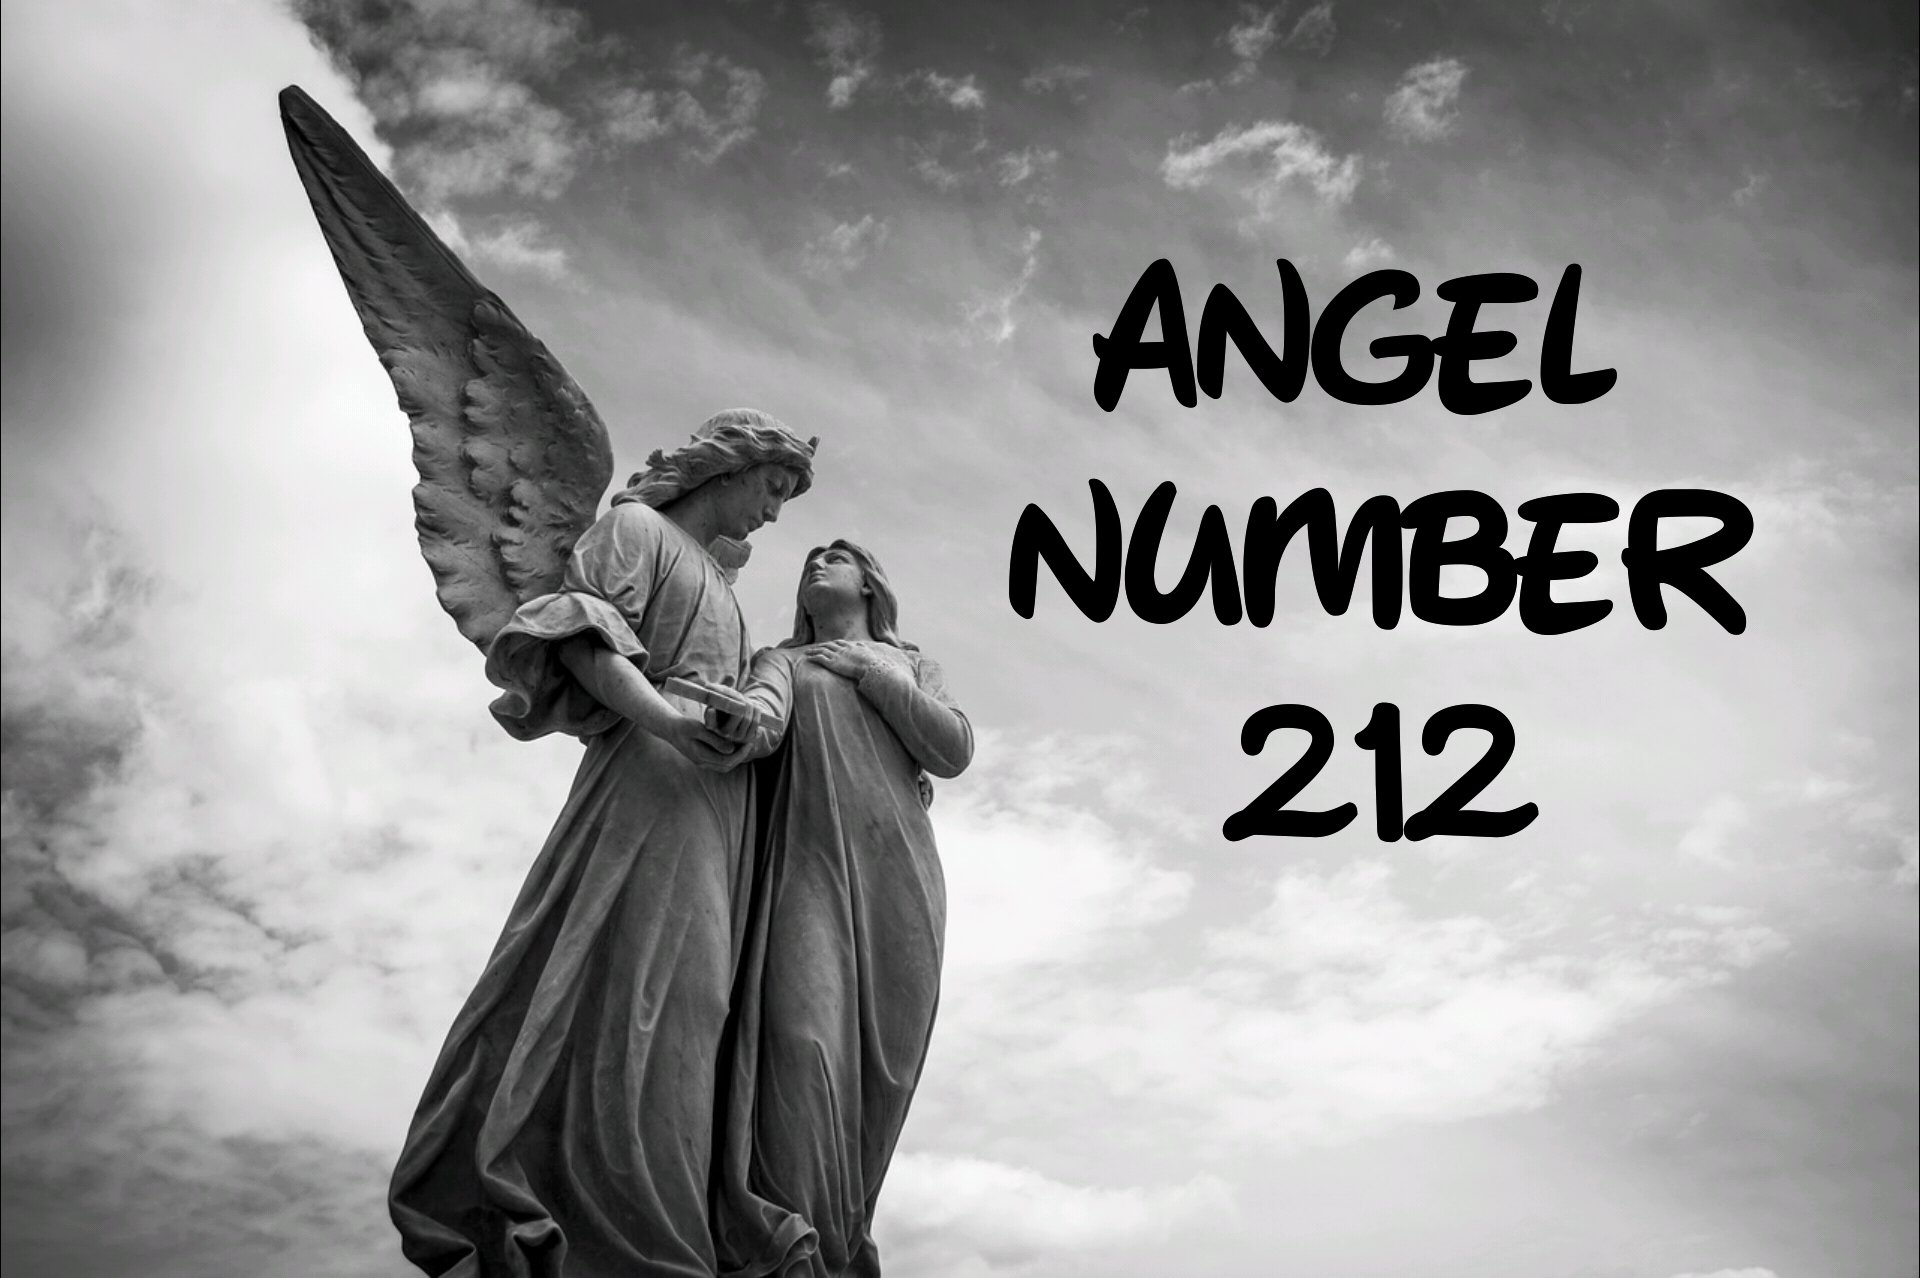 Angel Number 212